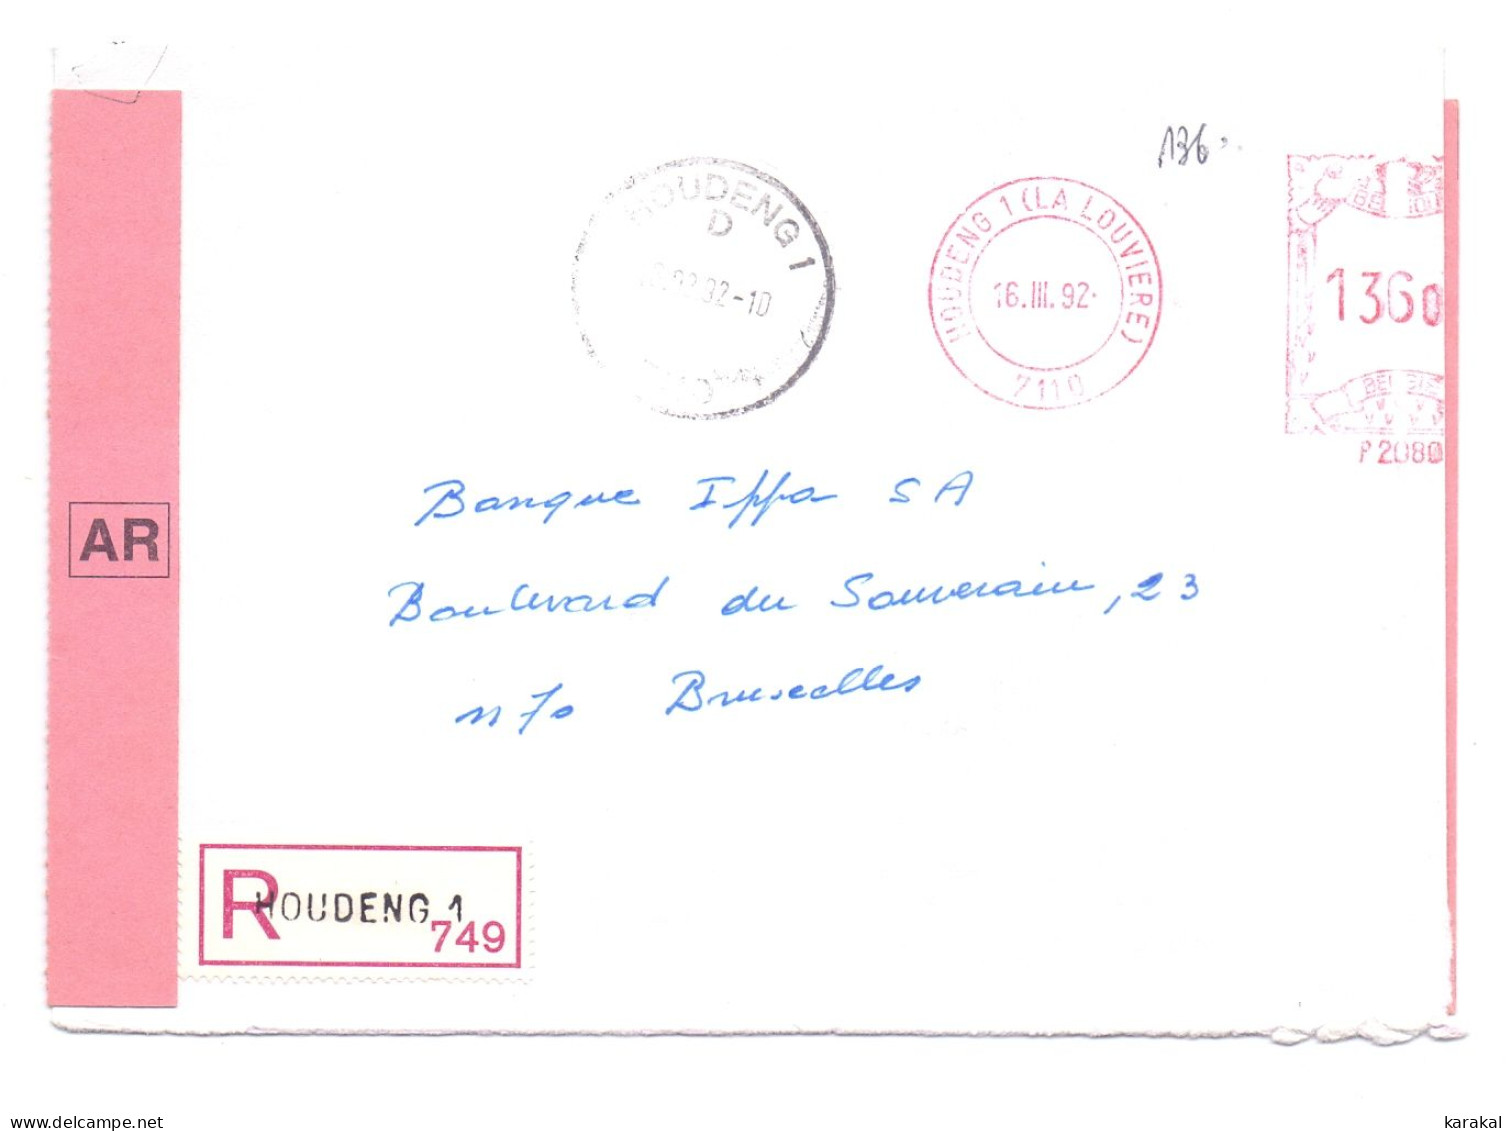 Belgique EMA P2080 IPPA Lettre Recommandée Avec Accusé De Réception AR Houdeng 1 Bruxelles 1992 - 1980-99